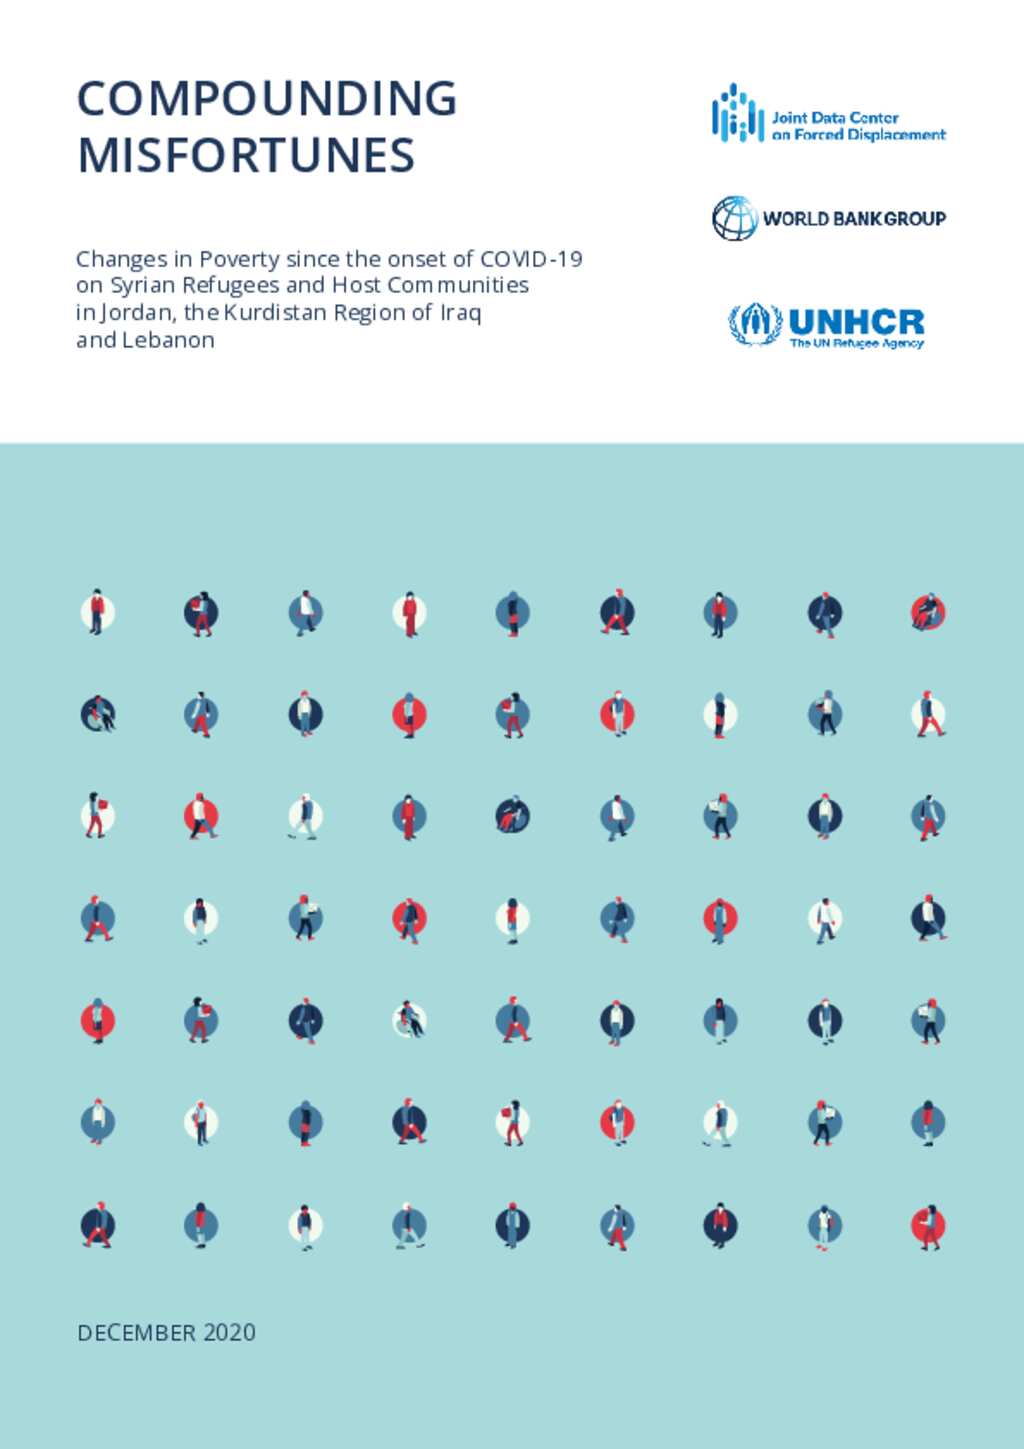 World Bank - UNHCR MENA Study: COVID-19 Compounding Misfortunes